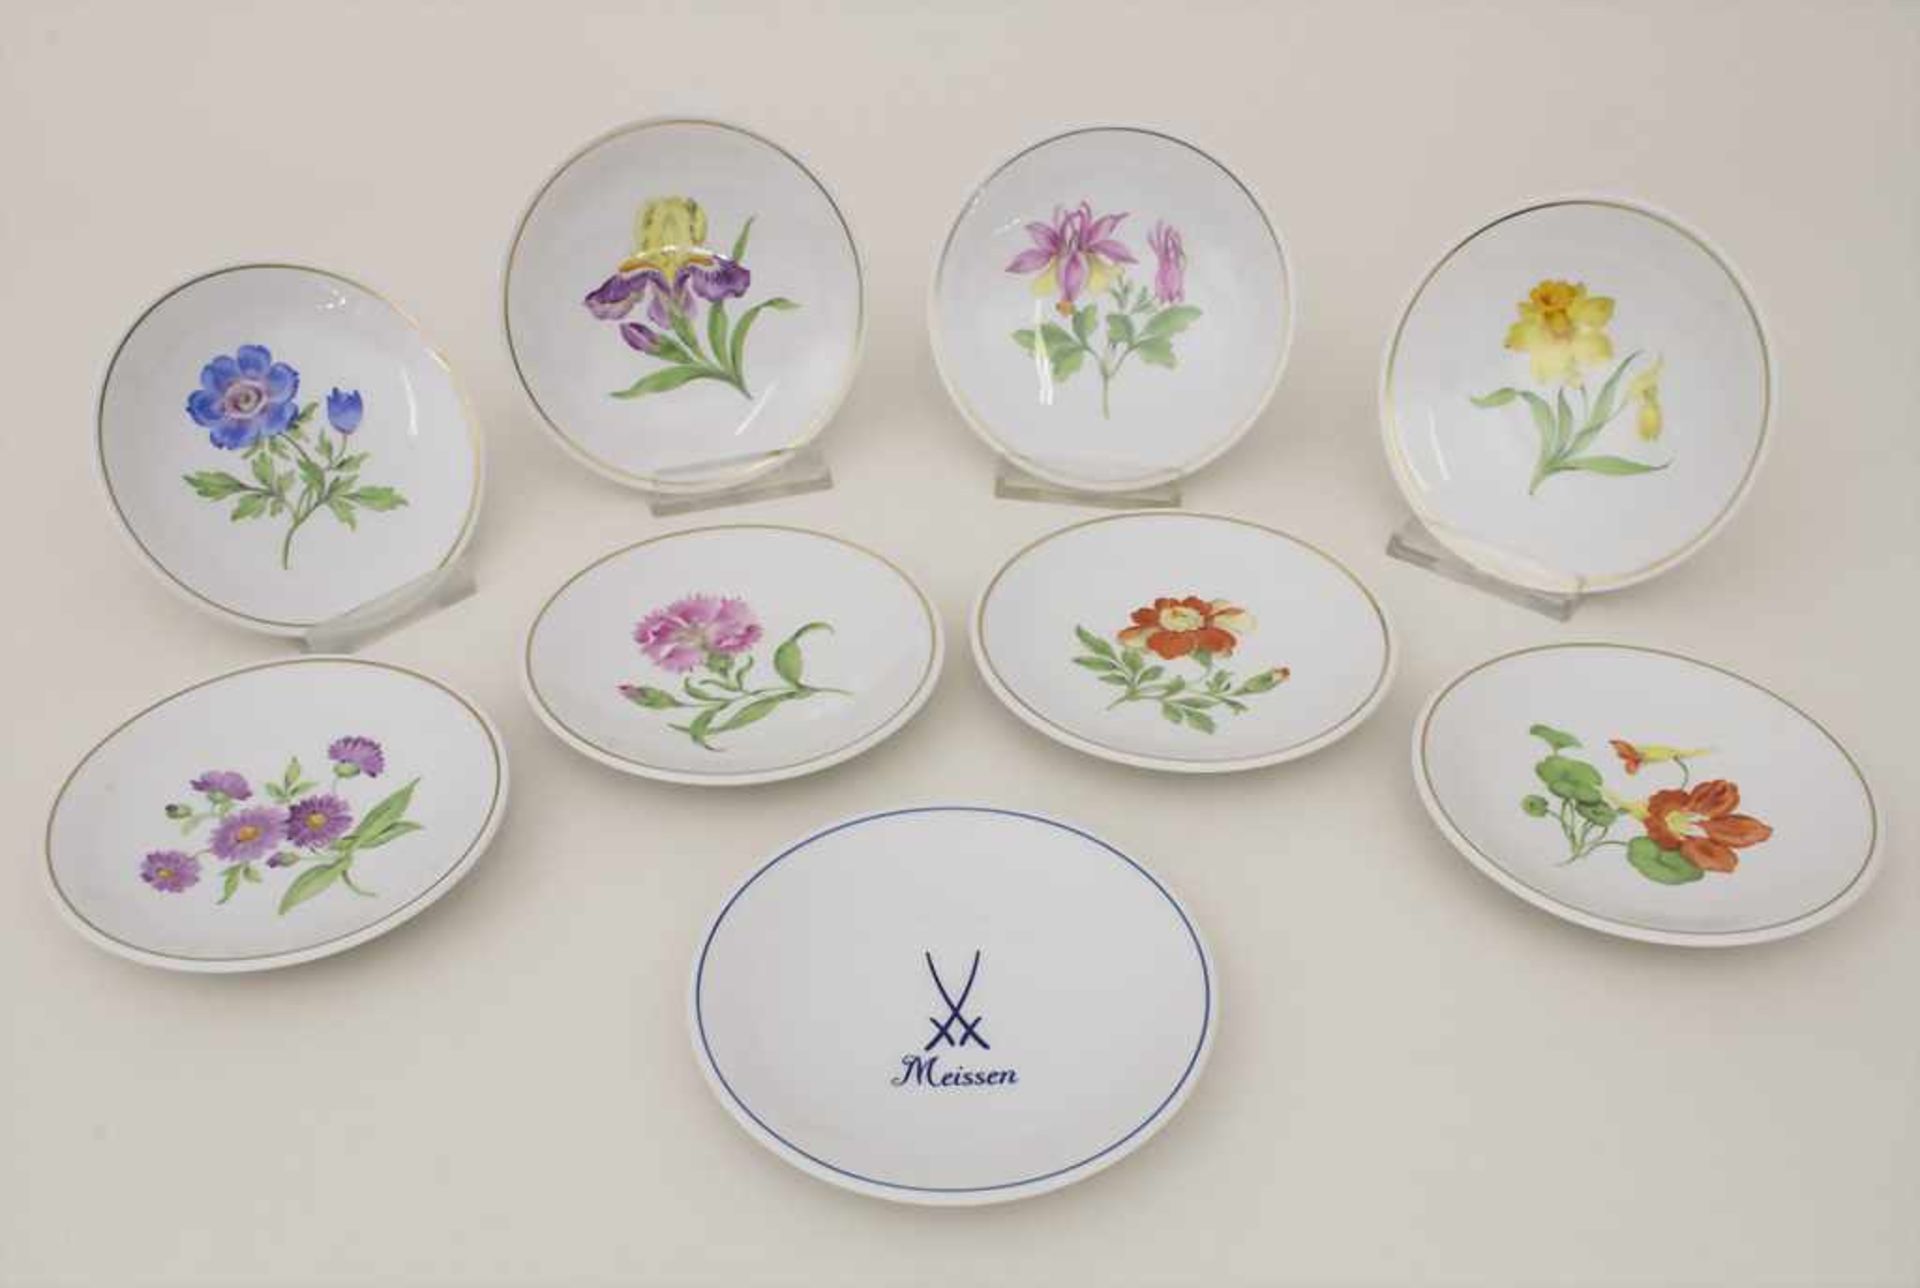 Satz von 9 Konfekttellern mit Blumenmalerei / A set of 9 small plates with flowers